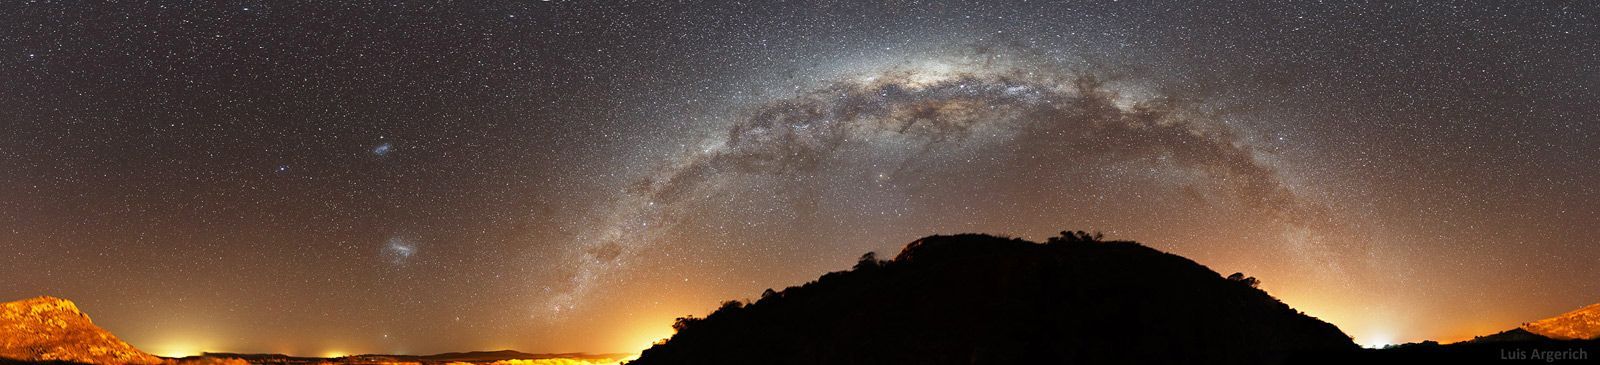 JEN PRO FOTOGALERII! Nejkrásnější fotografie nočního nebe ze soutěže The 2012 Earth & Sky Photo Contest